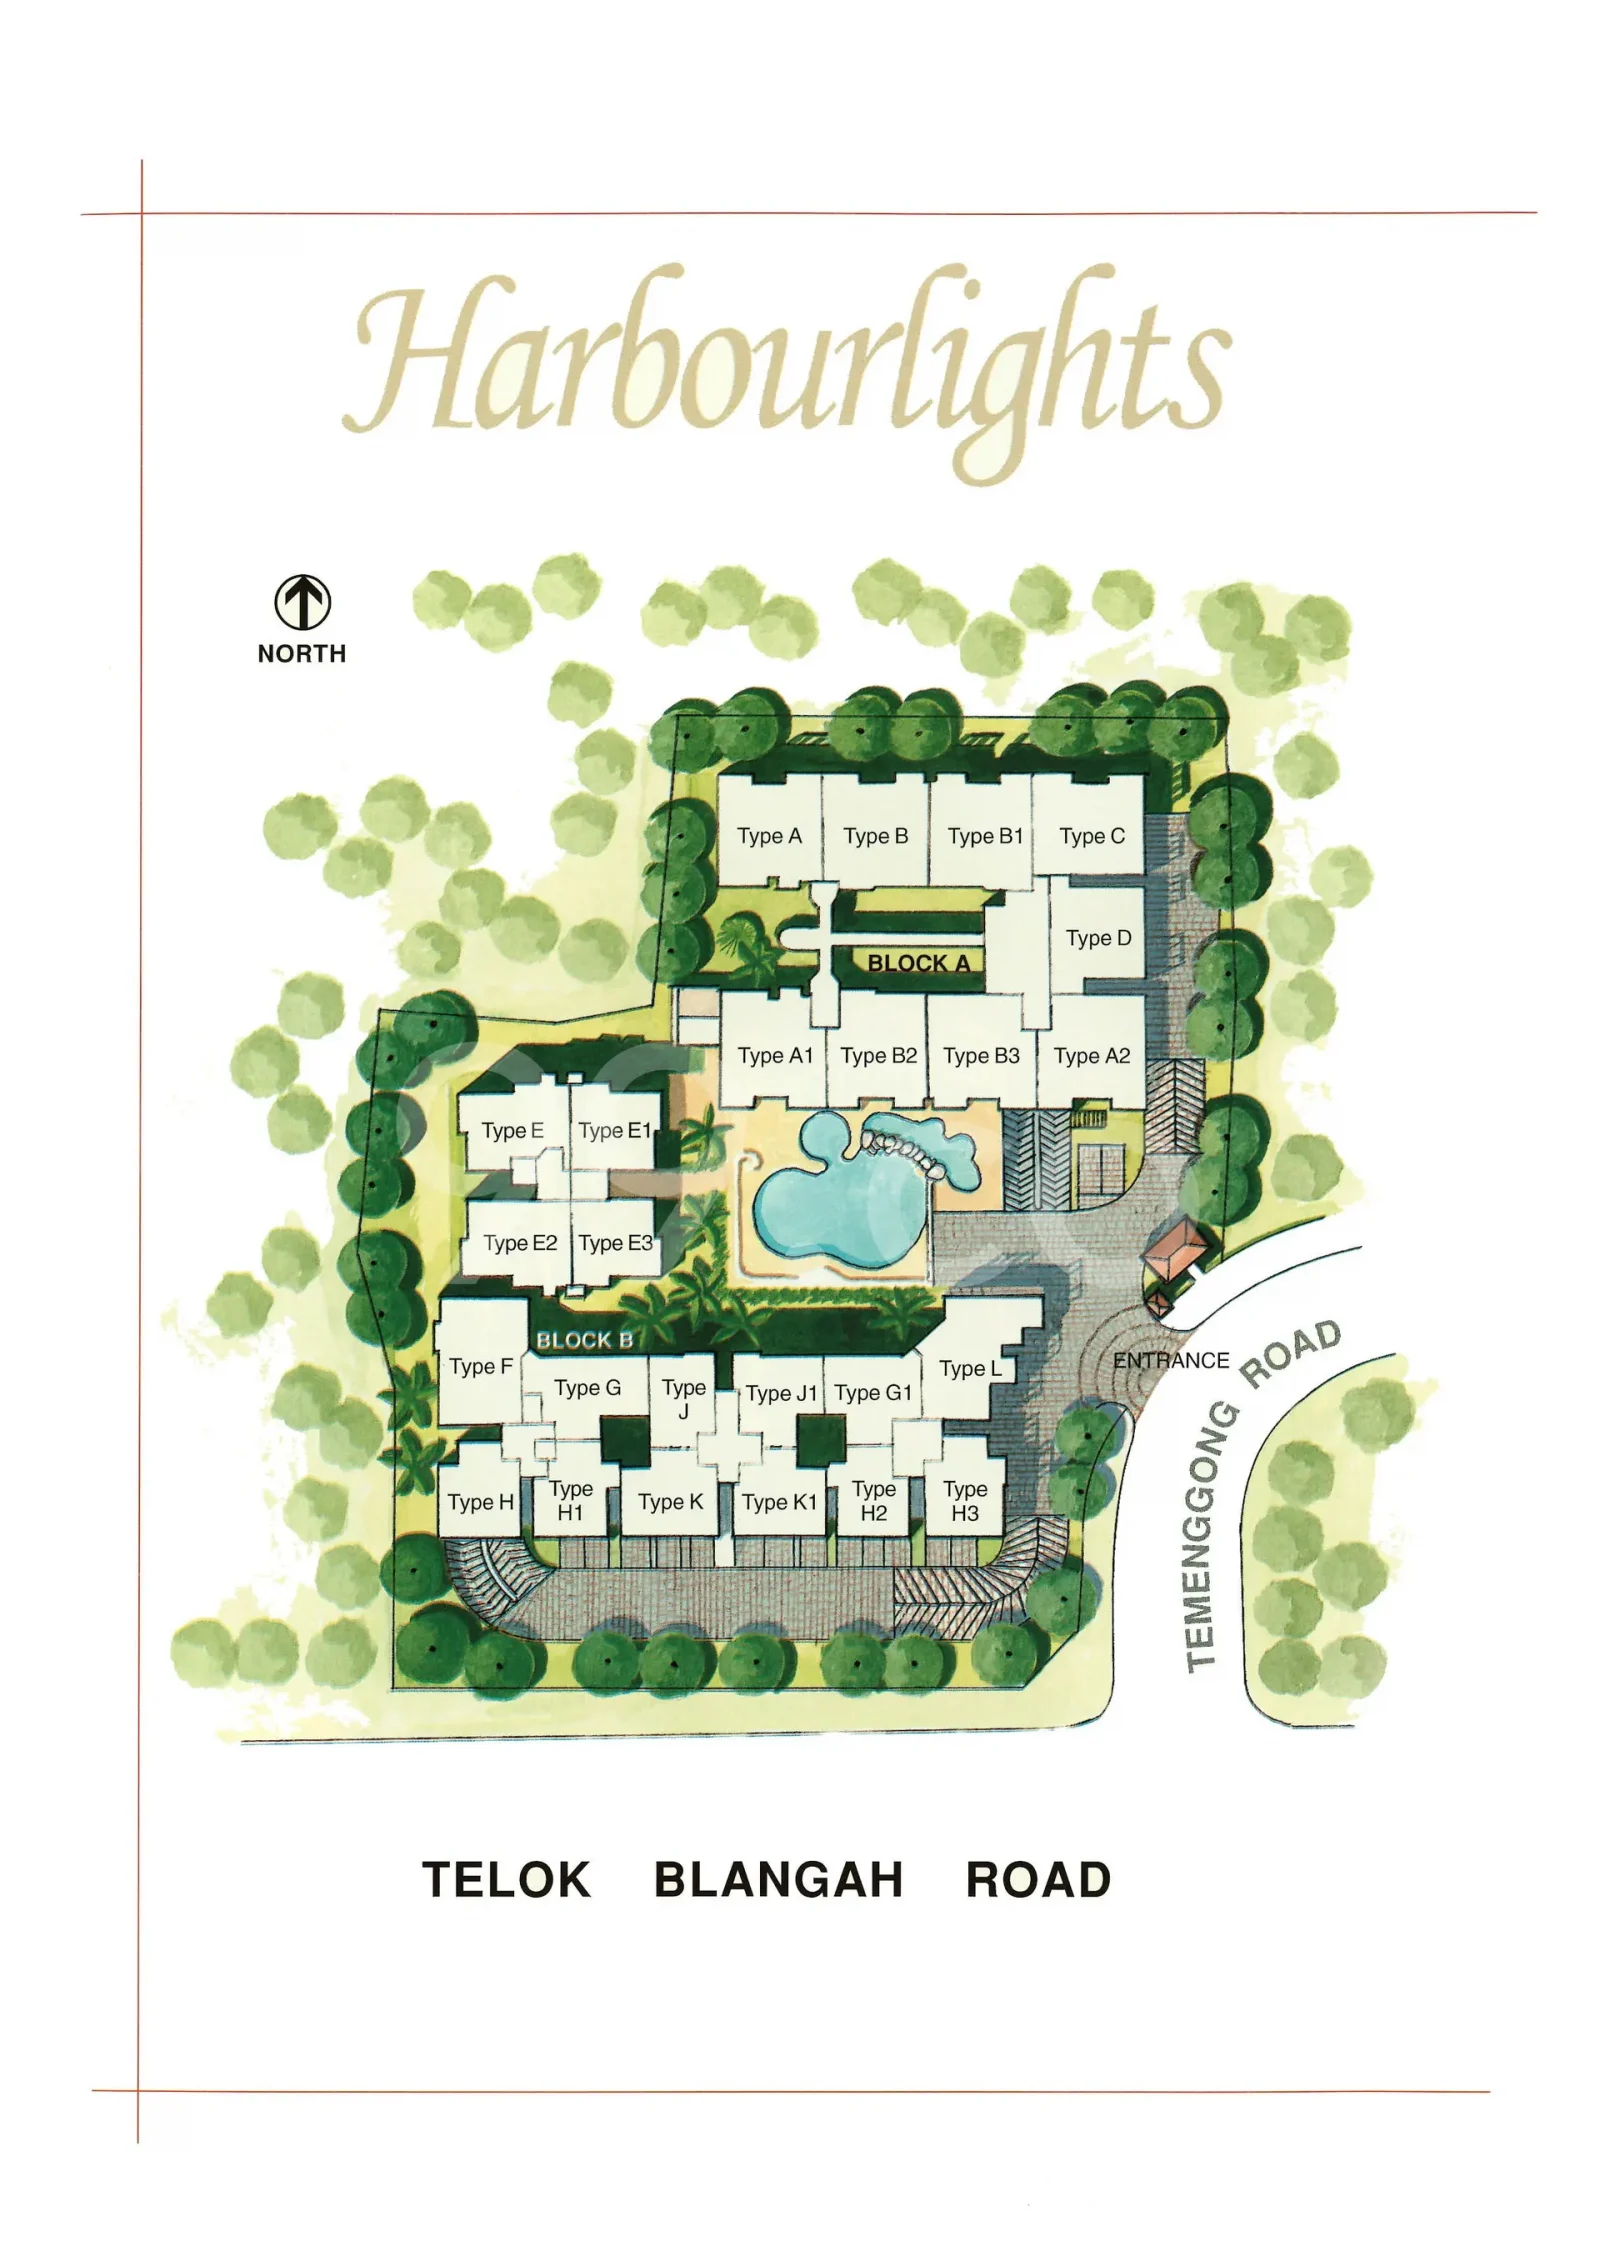 Harbourlights site plan